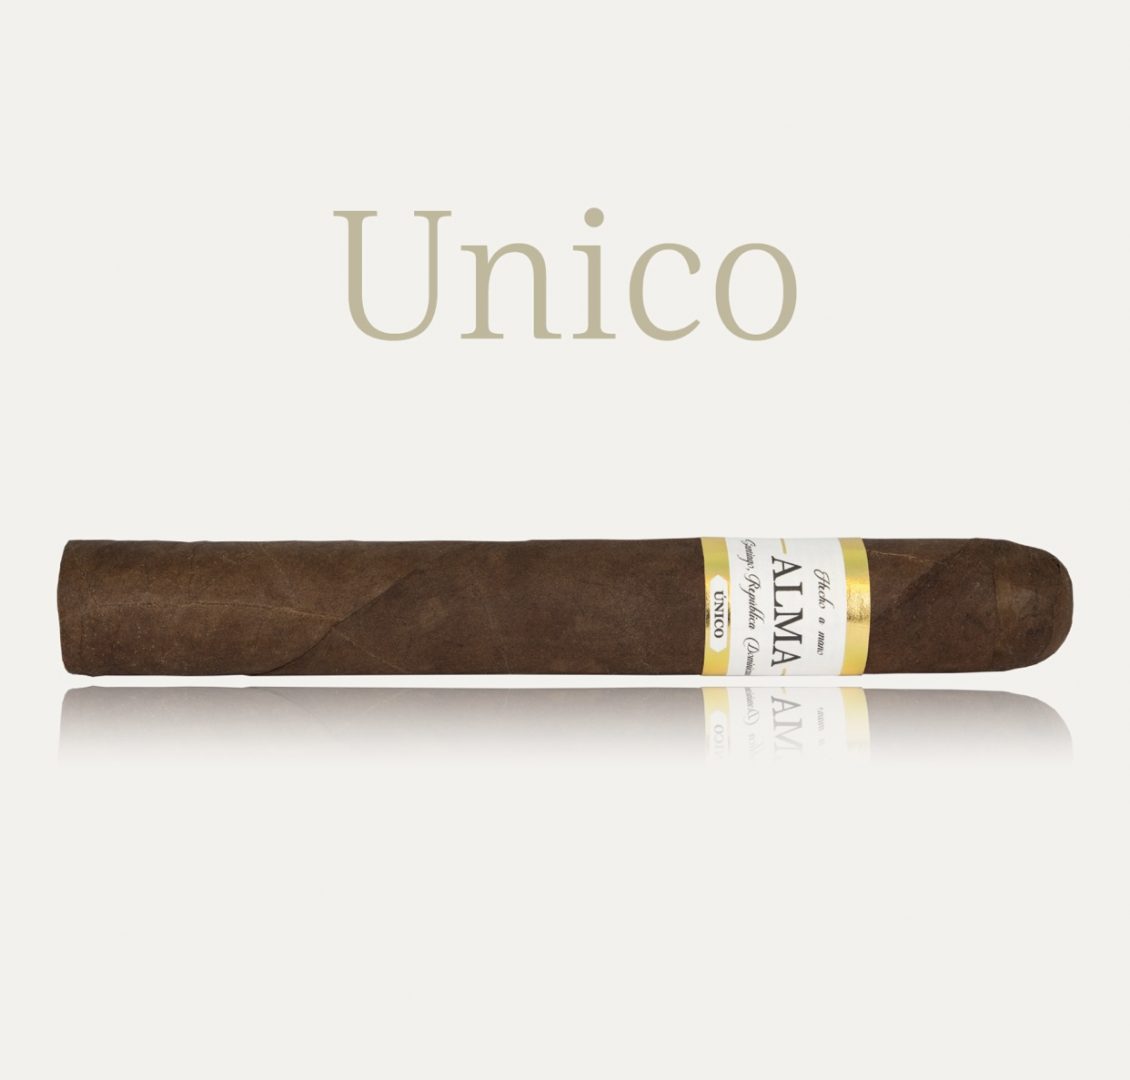 Unico by ALMA Cigarros